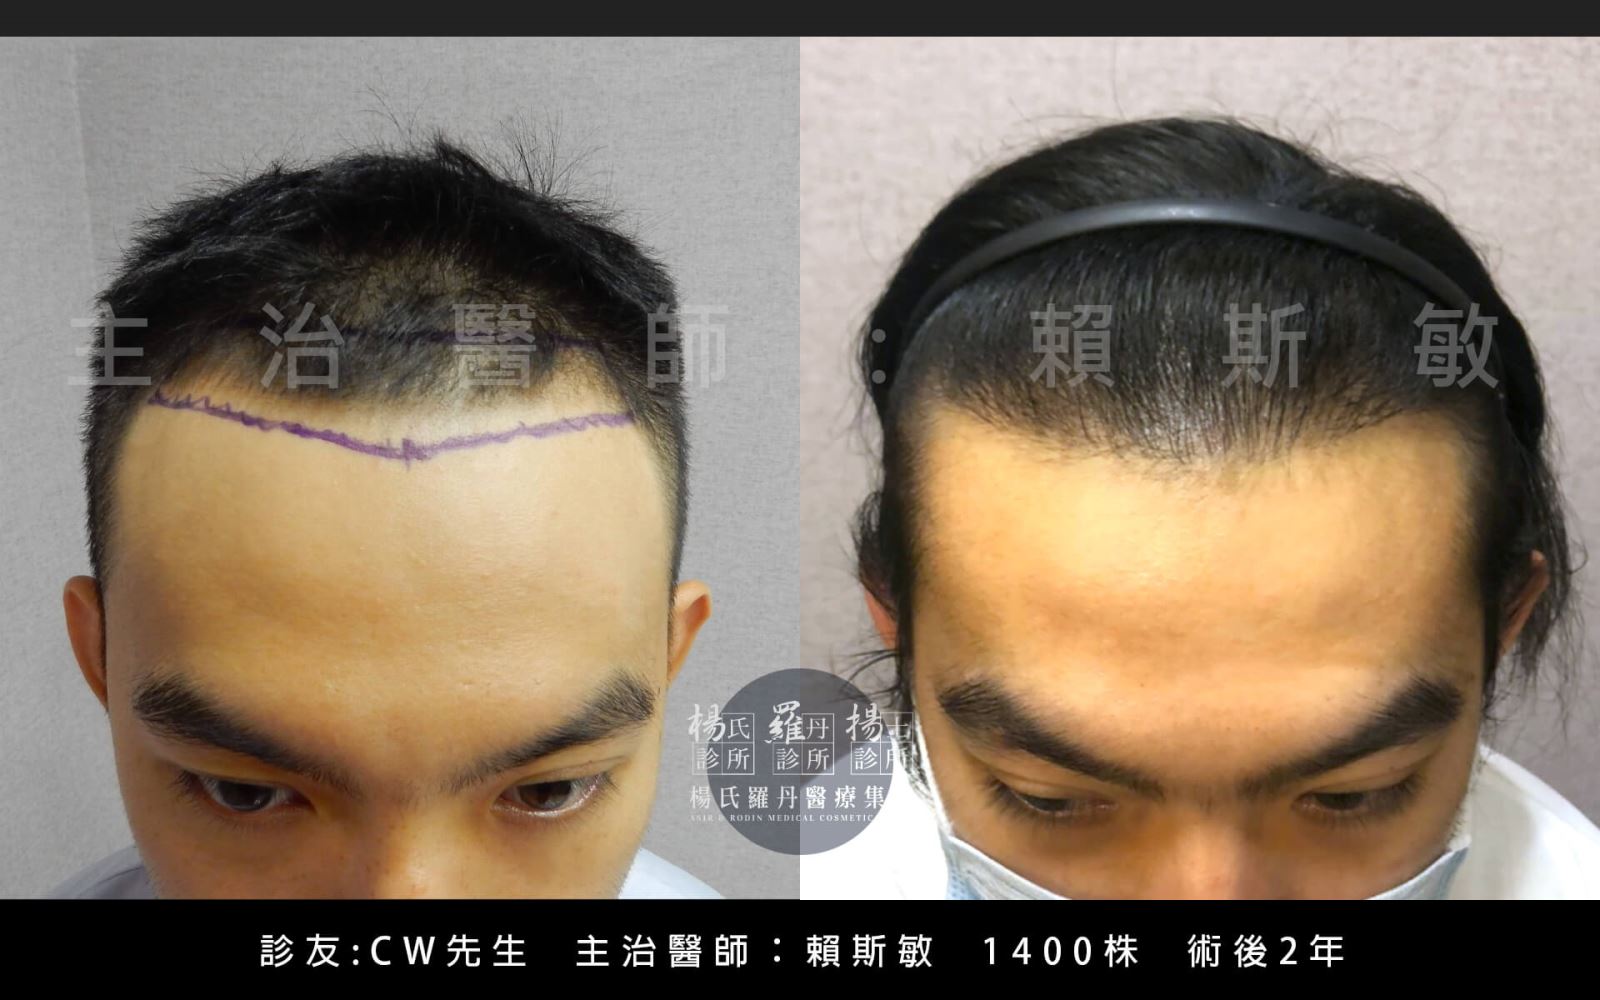 楊氏羅丹的賴醫師幫助頭髮恢復正常髮線